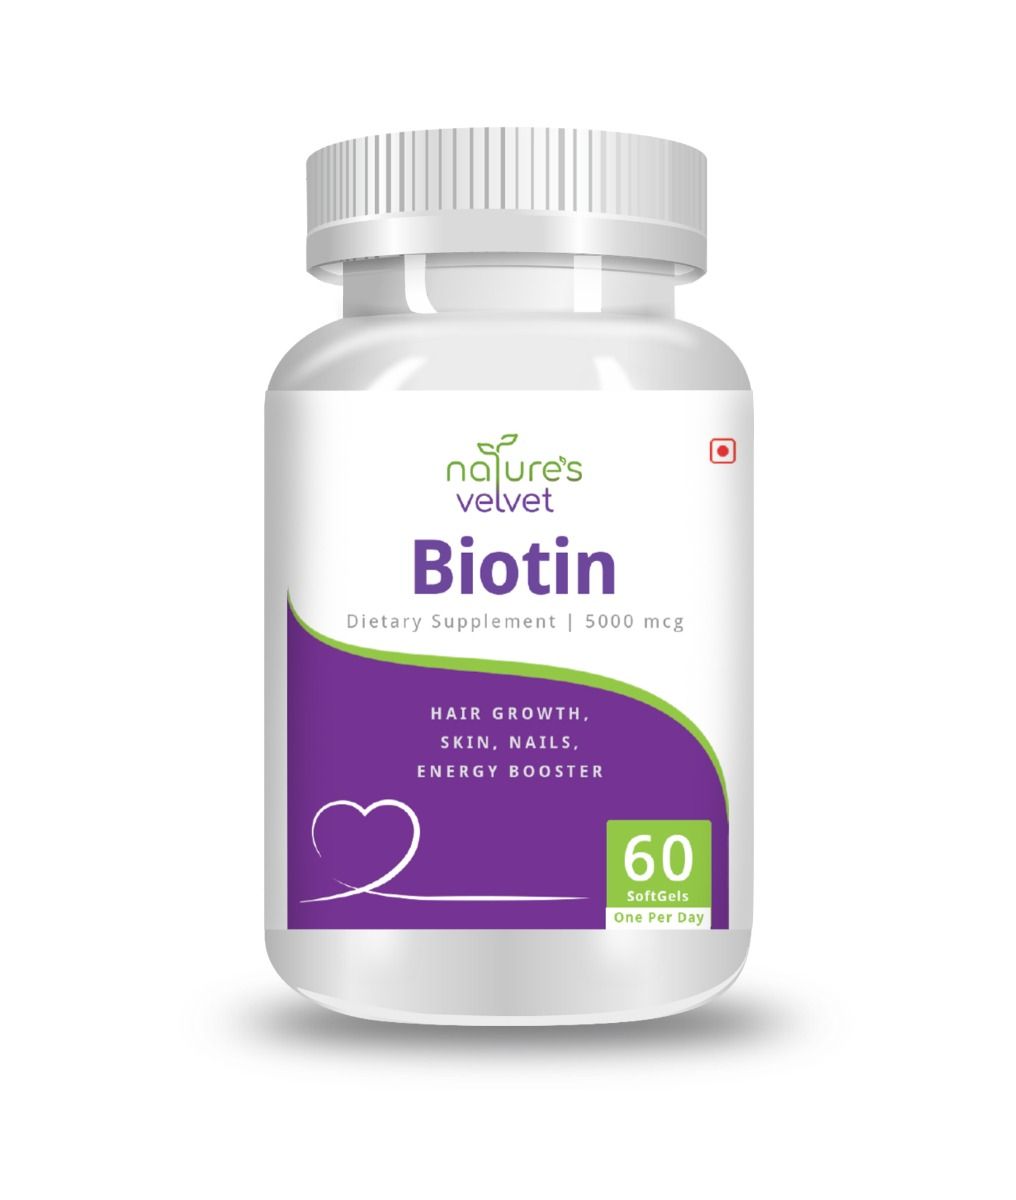 Buy Nature's Velvet Biotin Dietary Supplement 5000 mcg, 60 Softgels Online